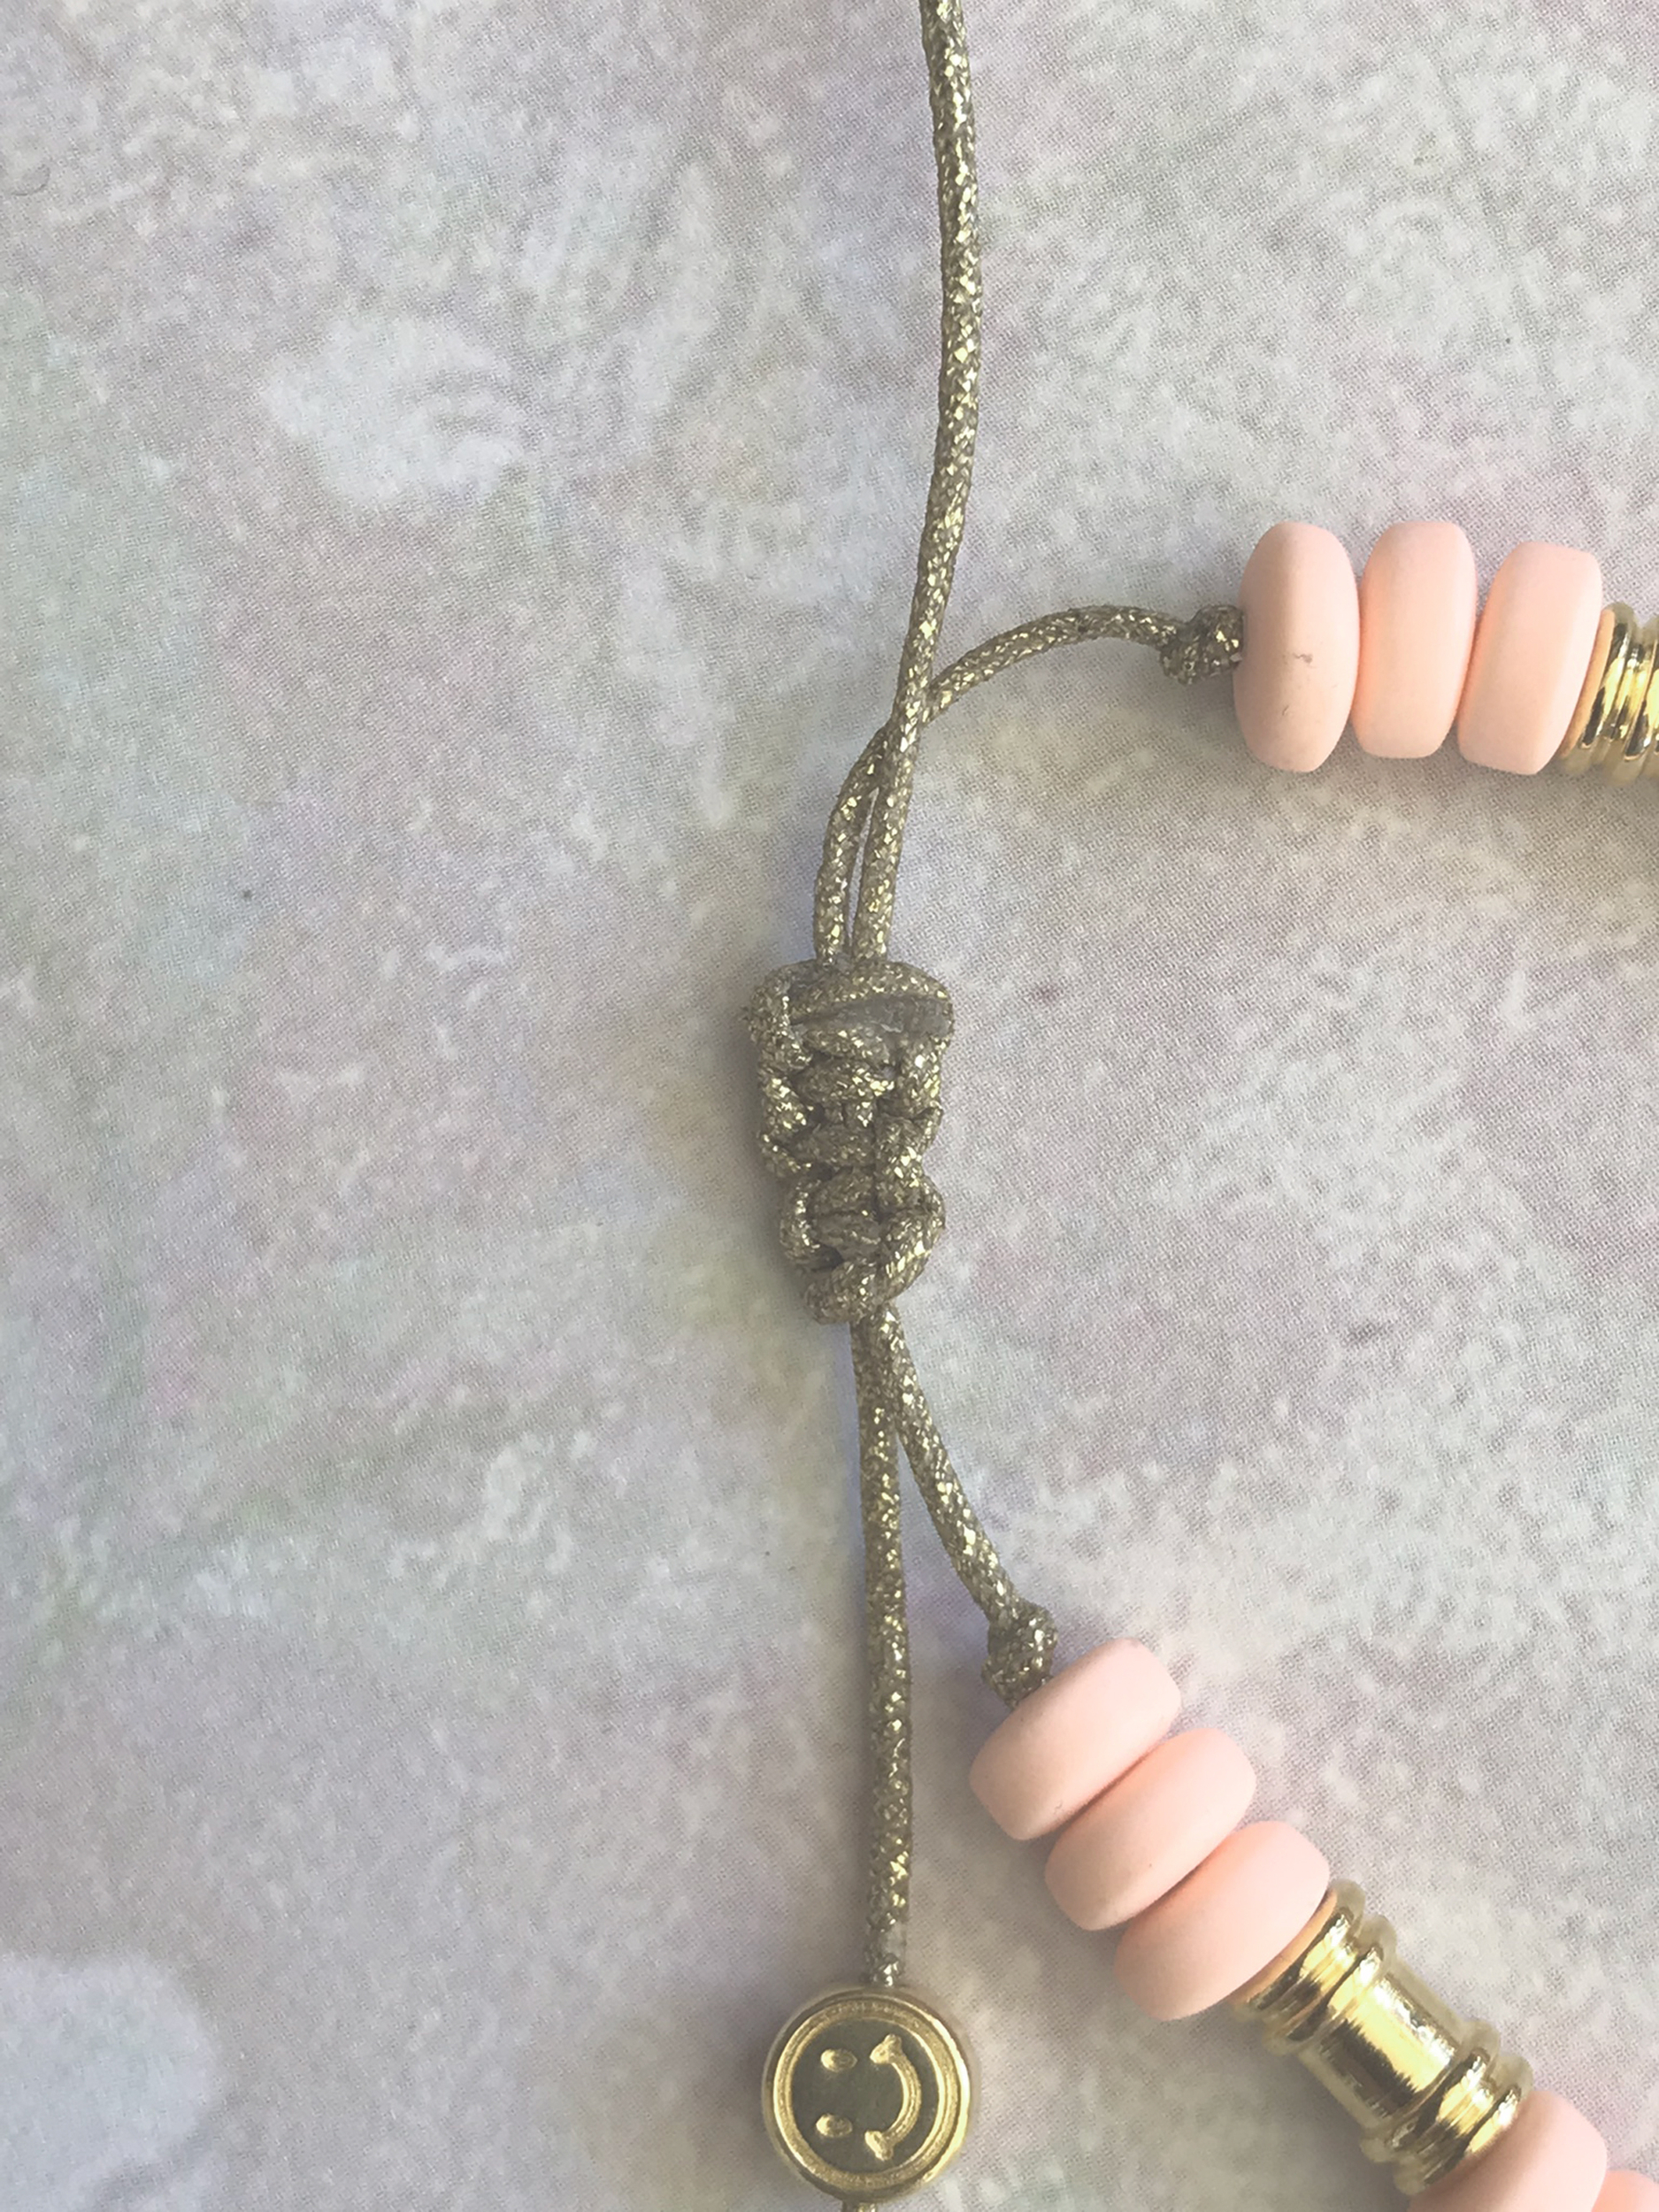 BMM089a-bracelet-perles-heishi-2-rangs